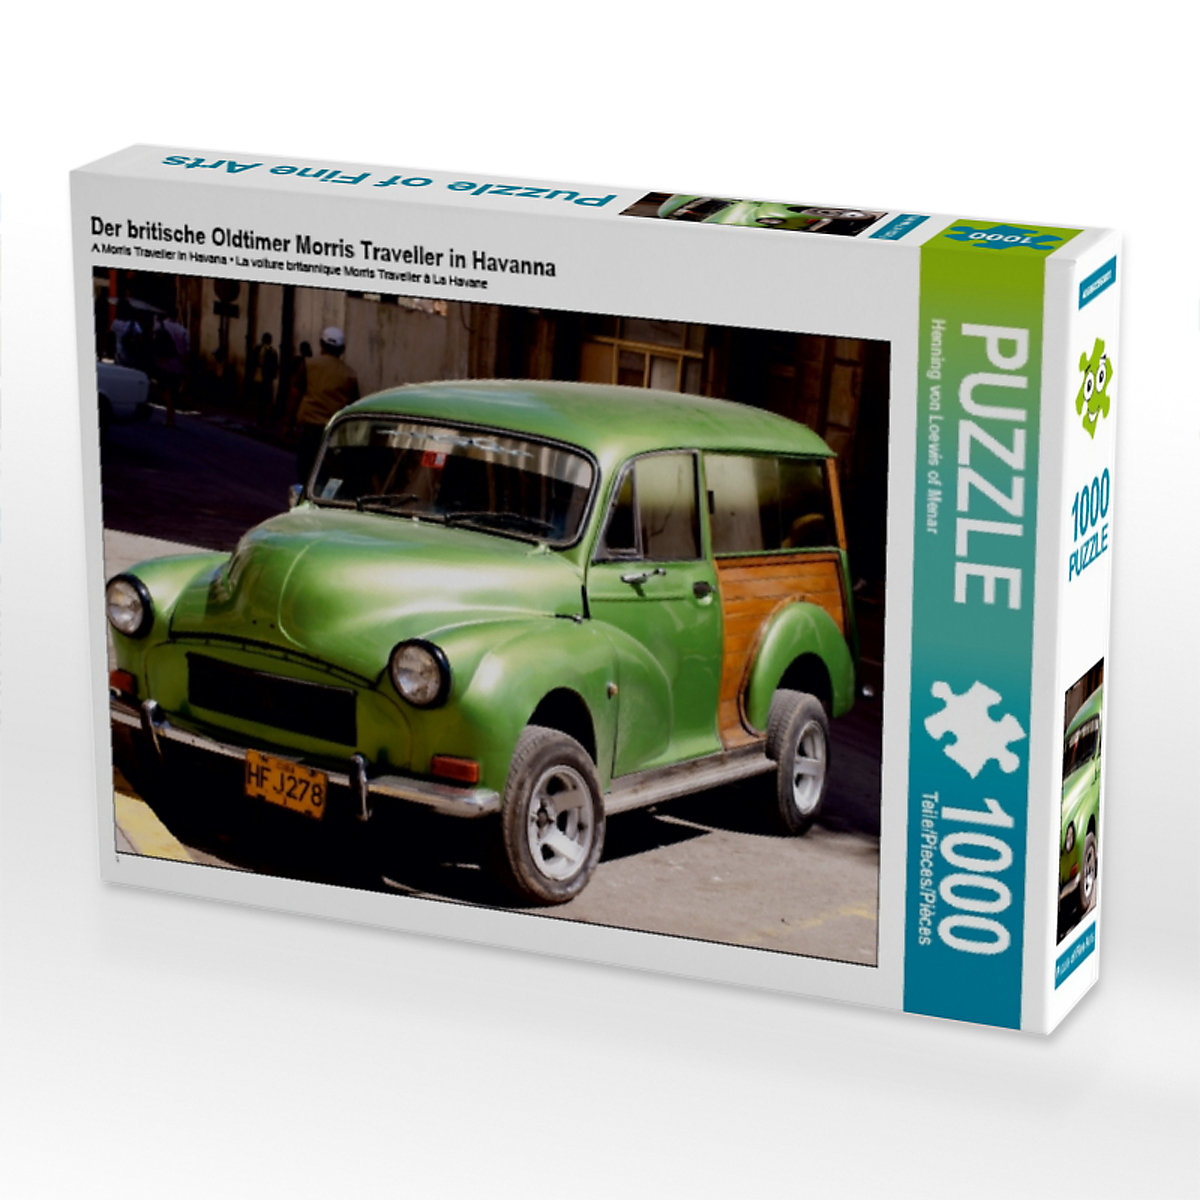 CALVENDO® Puzzle CALVENDO Puzzle Der britische Oldtimer Morris Traveller in Havanna 1000 Teile Foto-Puzzle für glückliche Stunden